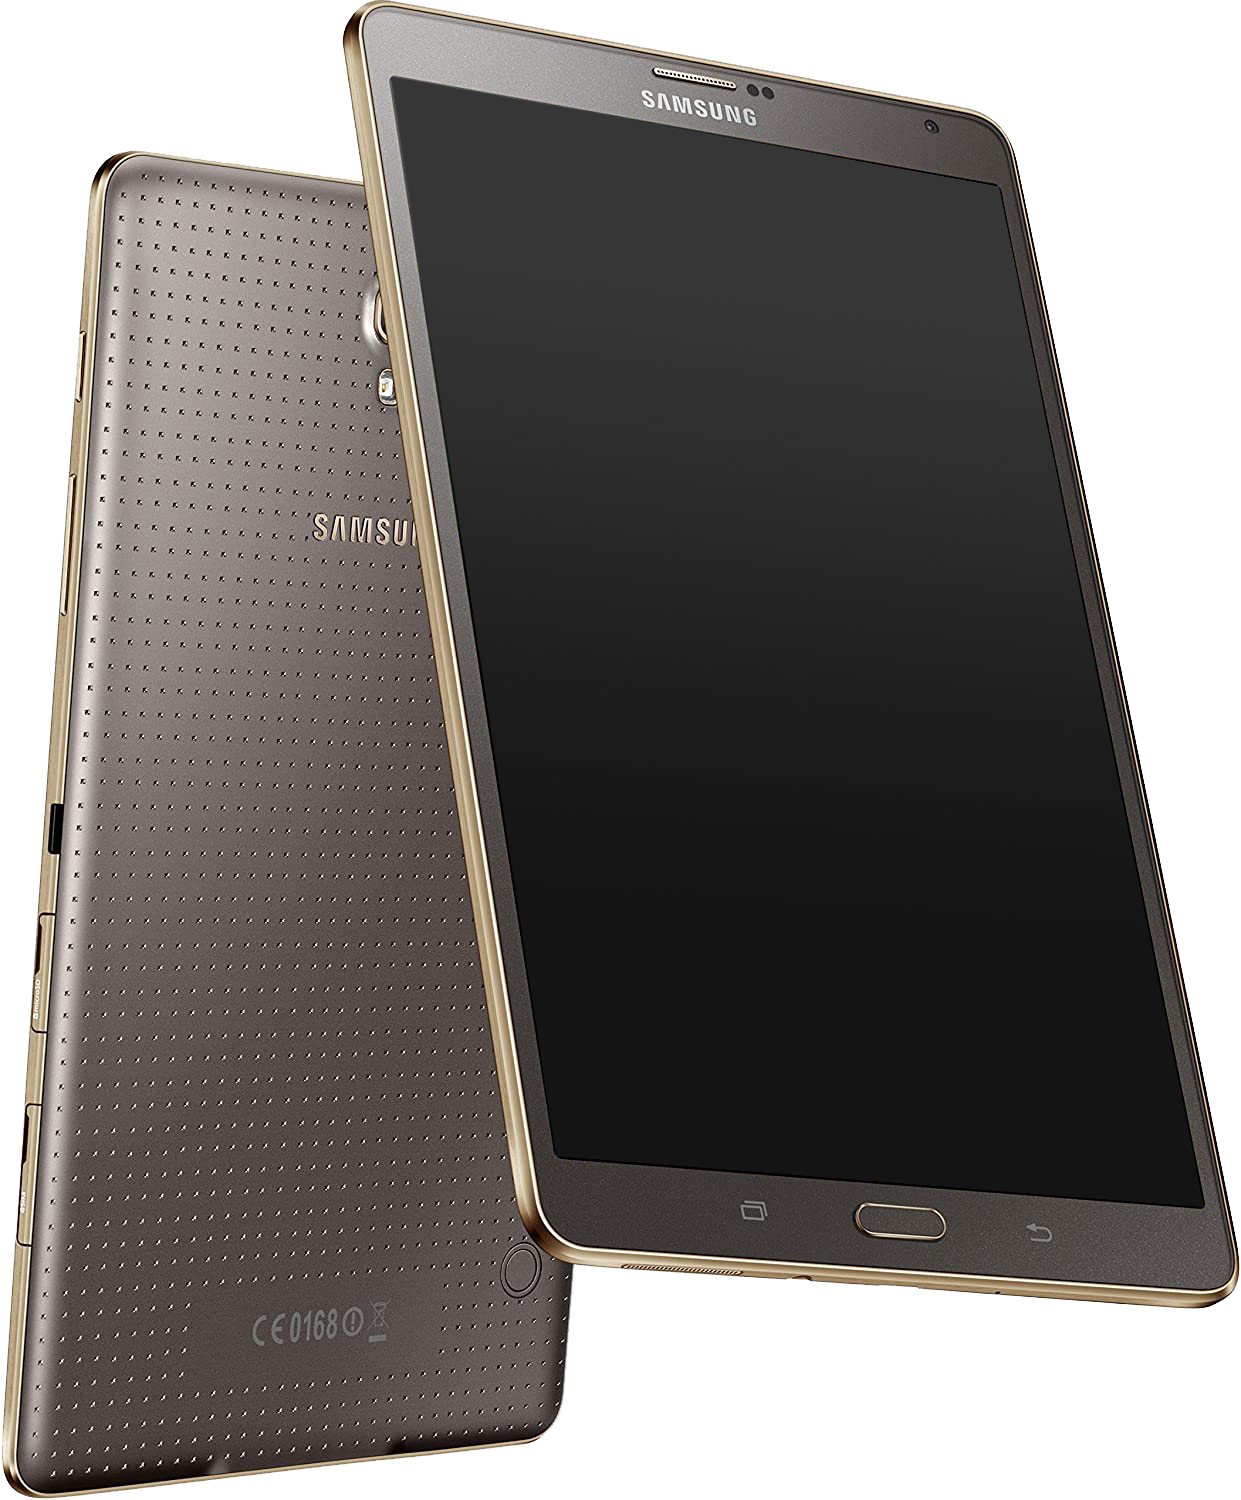 Samsung Galaxy Tab S 8.4 LTE T705 bronze - Ohne Vertrag						